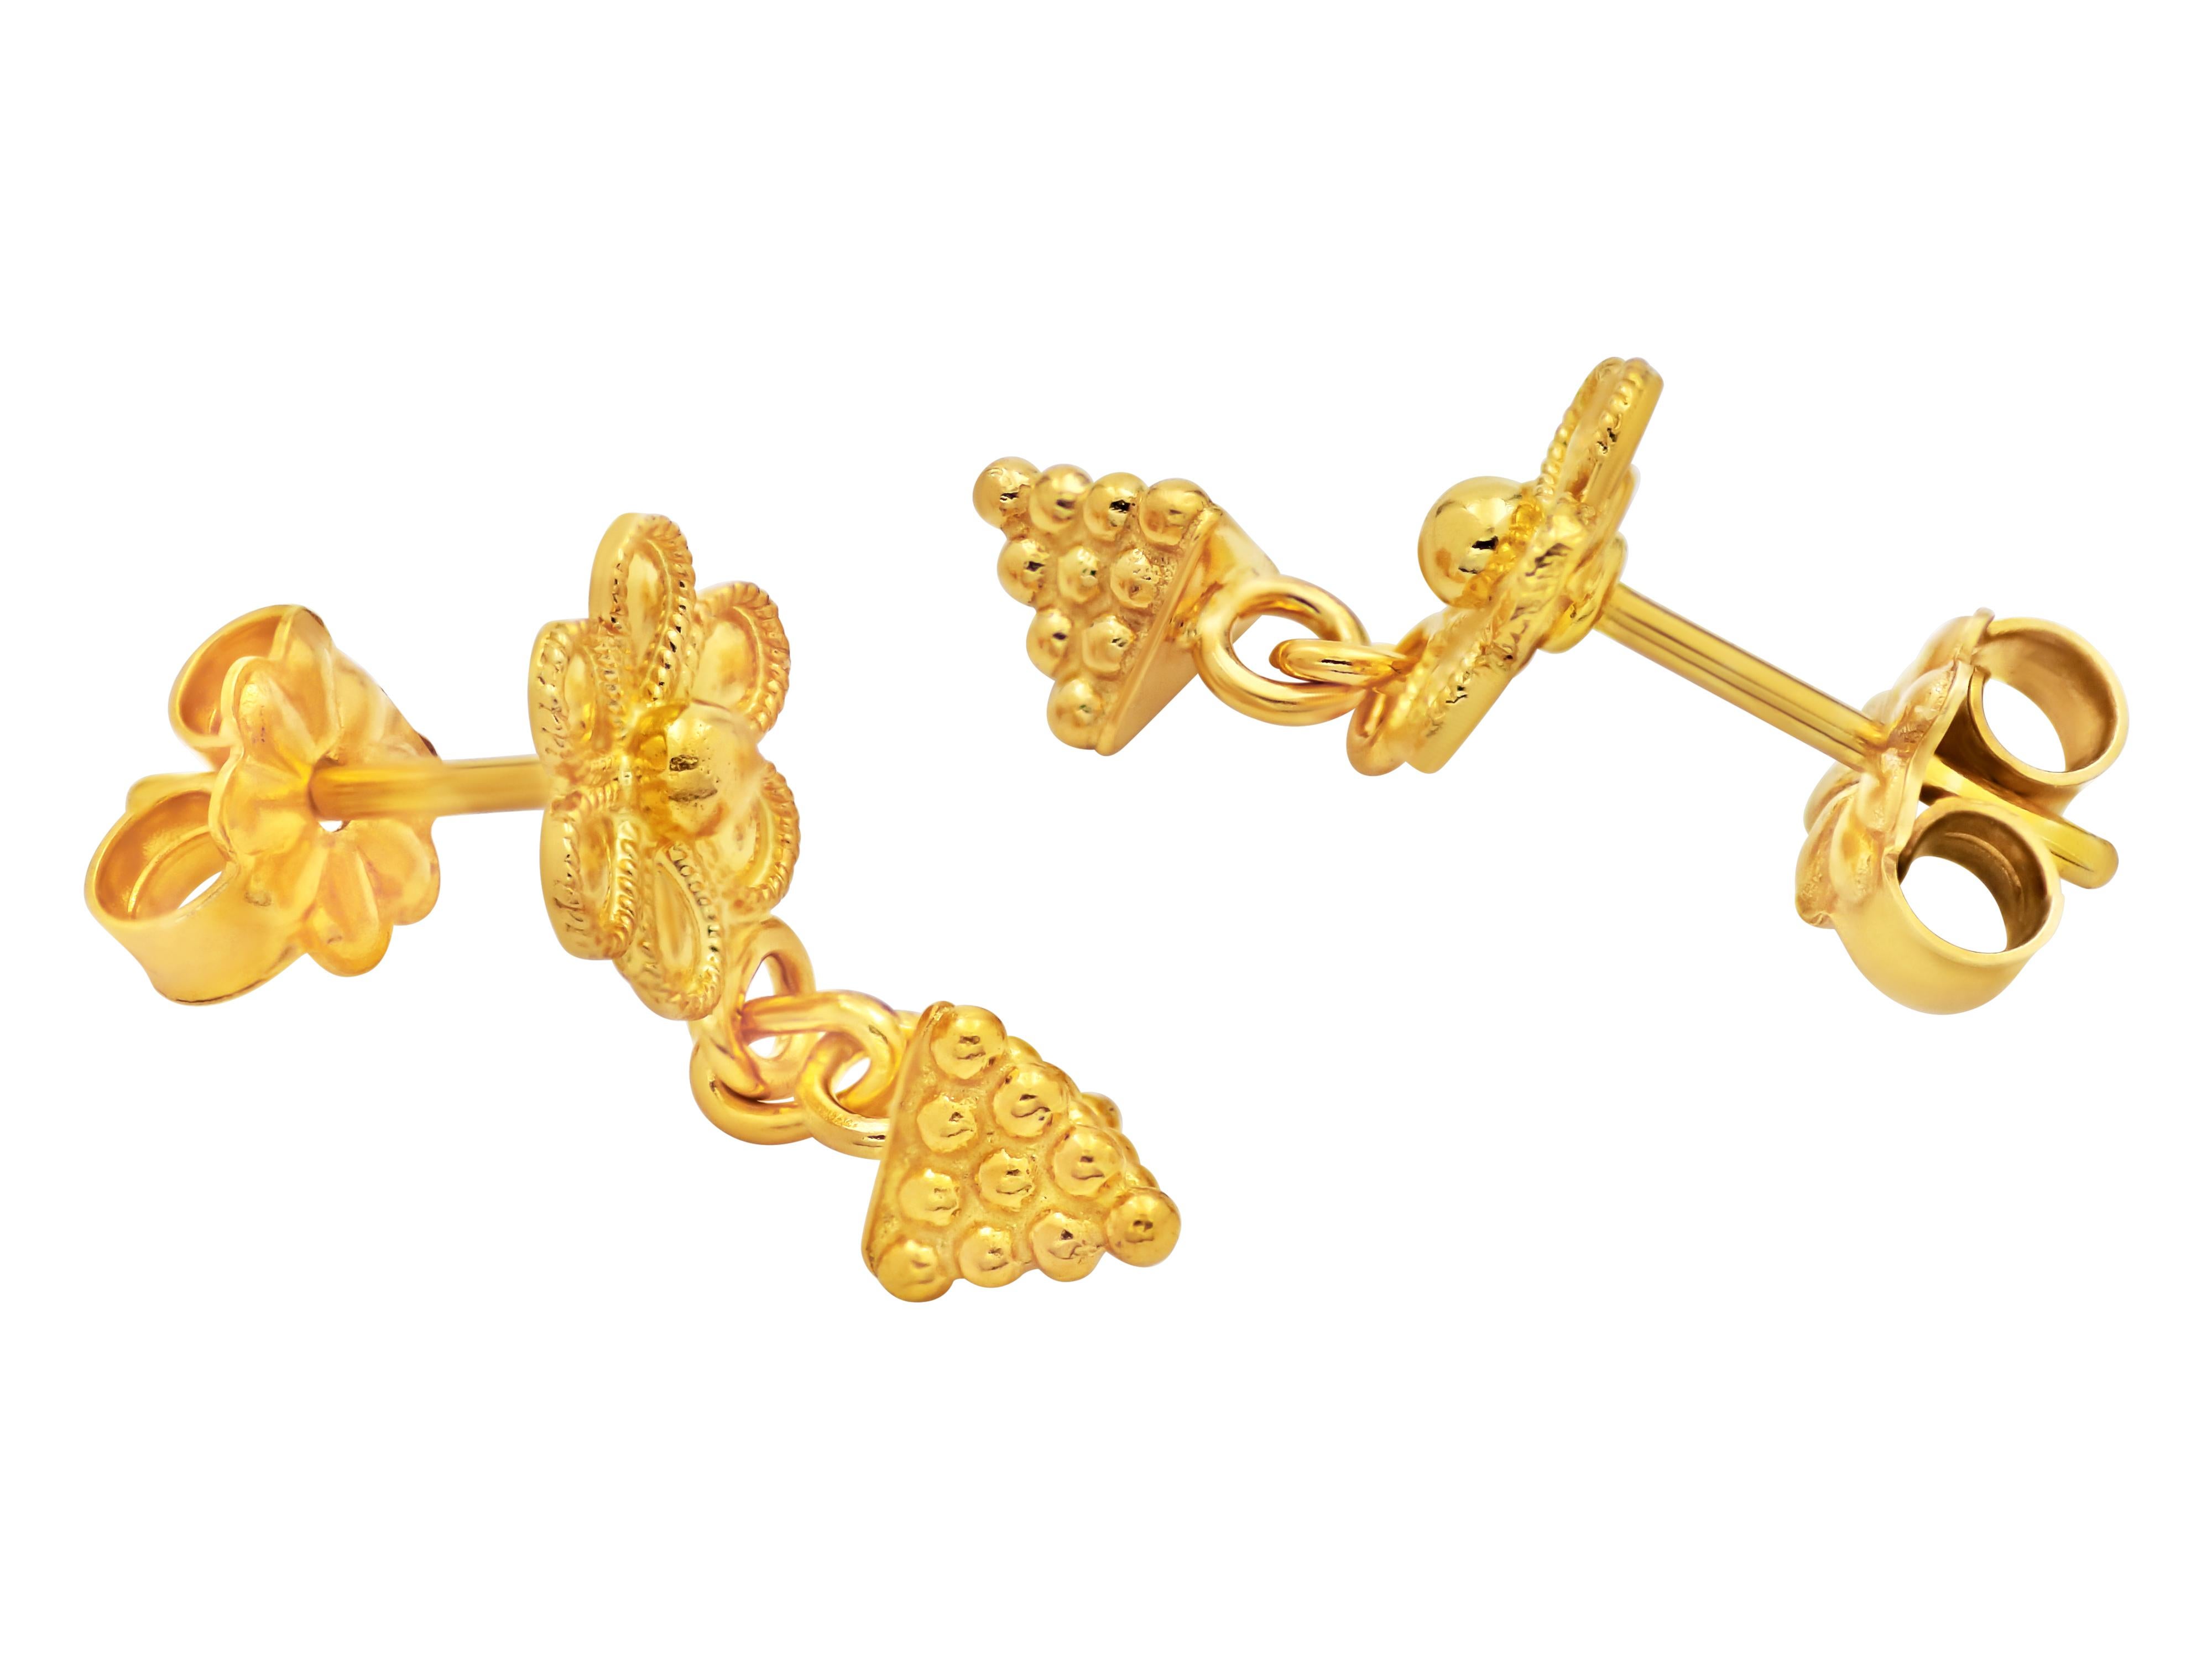 Ohrringe mit Gänseblümchen und Granulationspyramiden aus 18 Karat Gelbgold. Ein Werk im neoklassischen Museumsstil, das von Geschmack und Wissen zeugt.